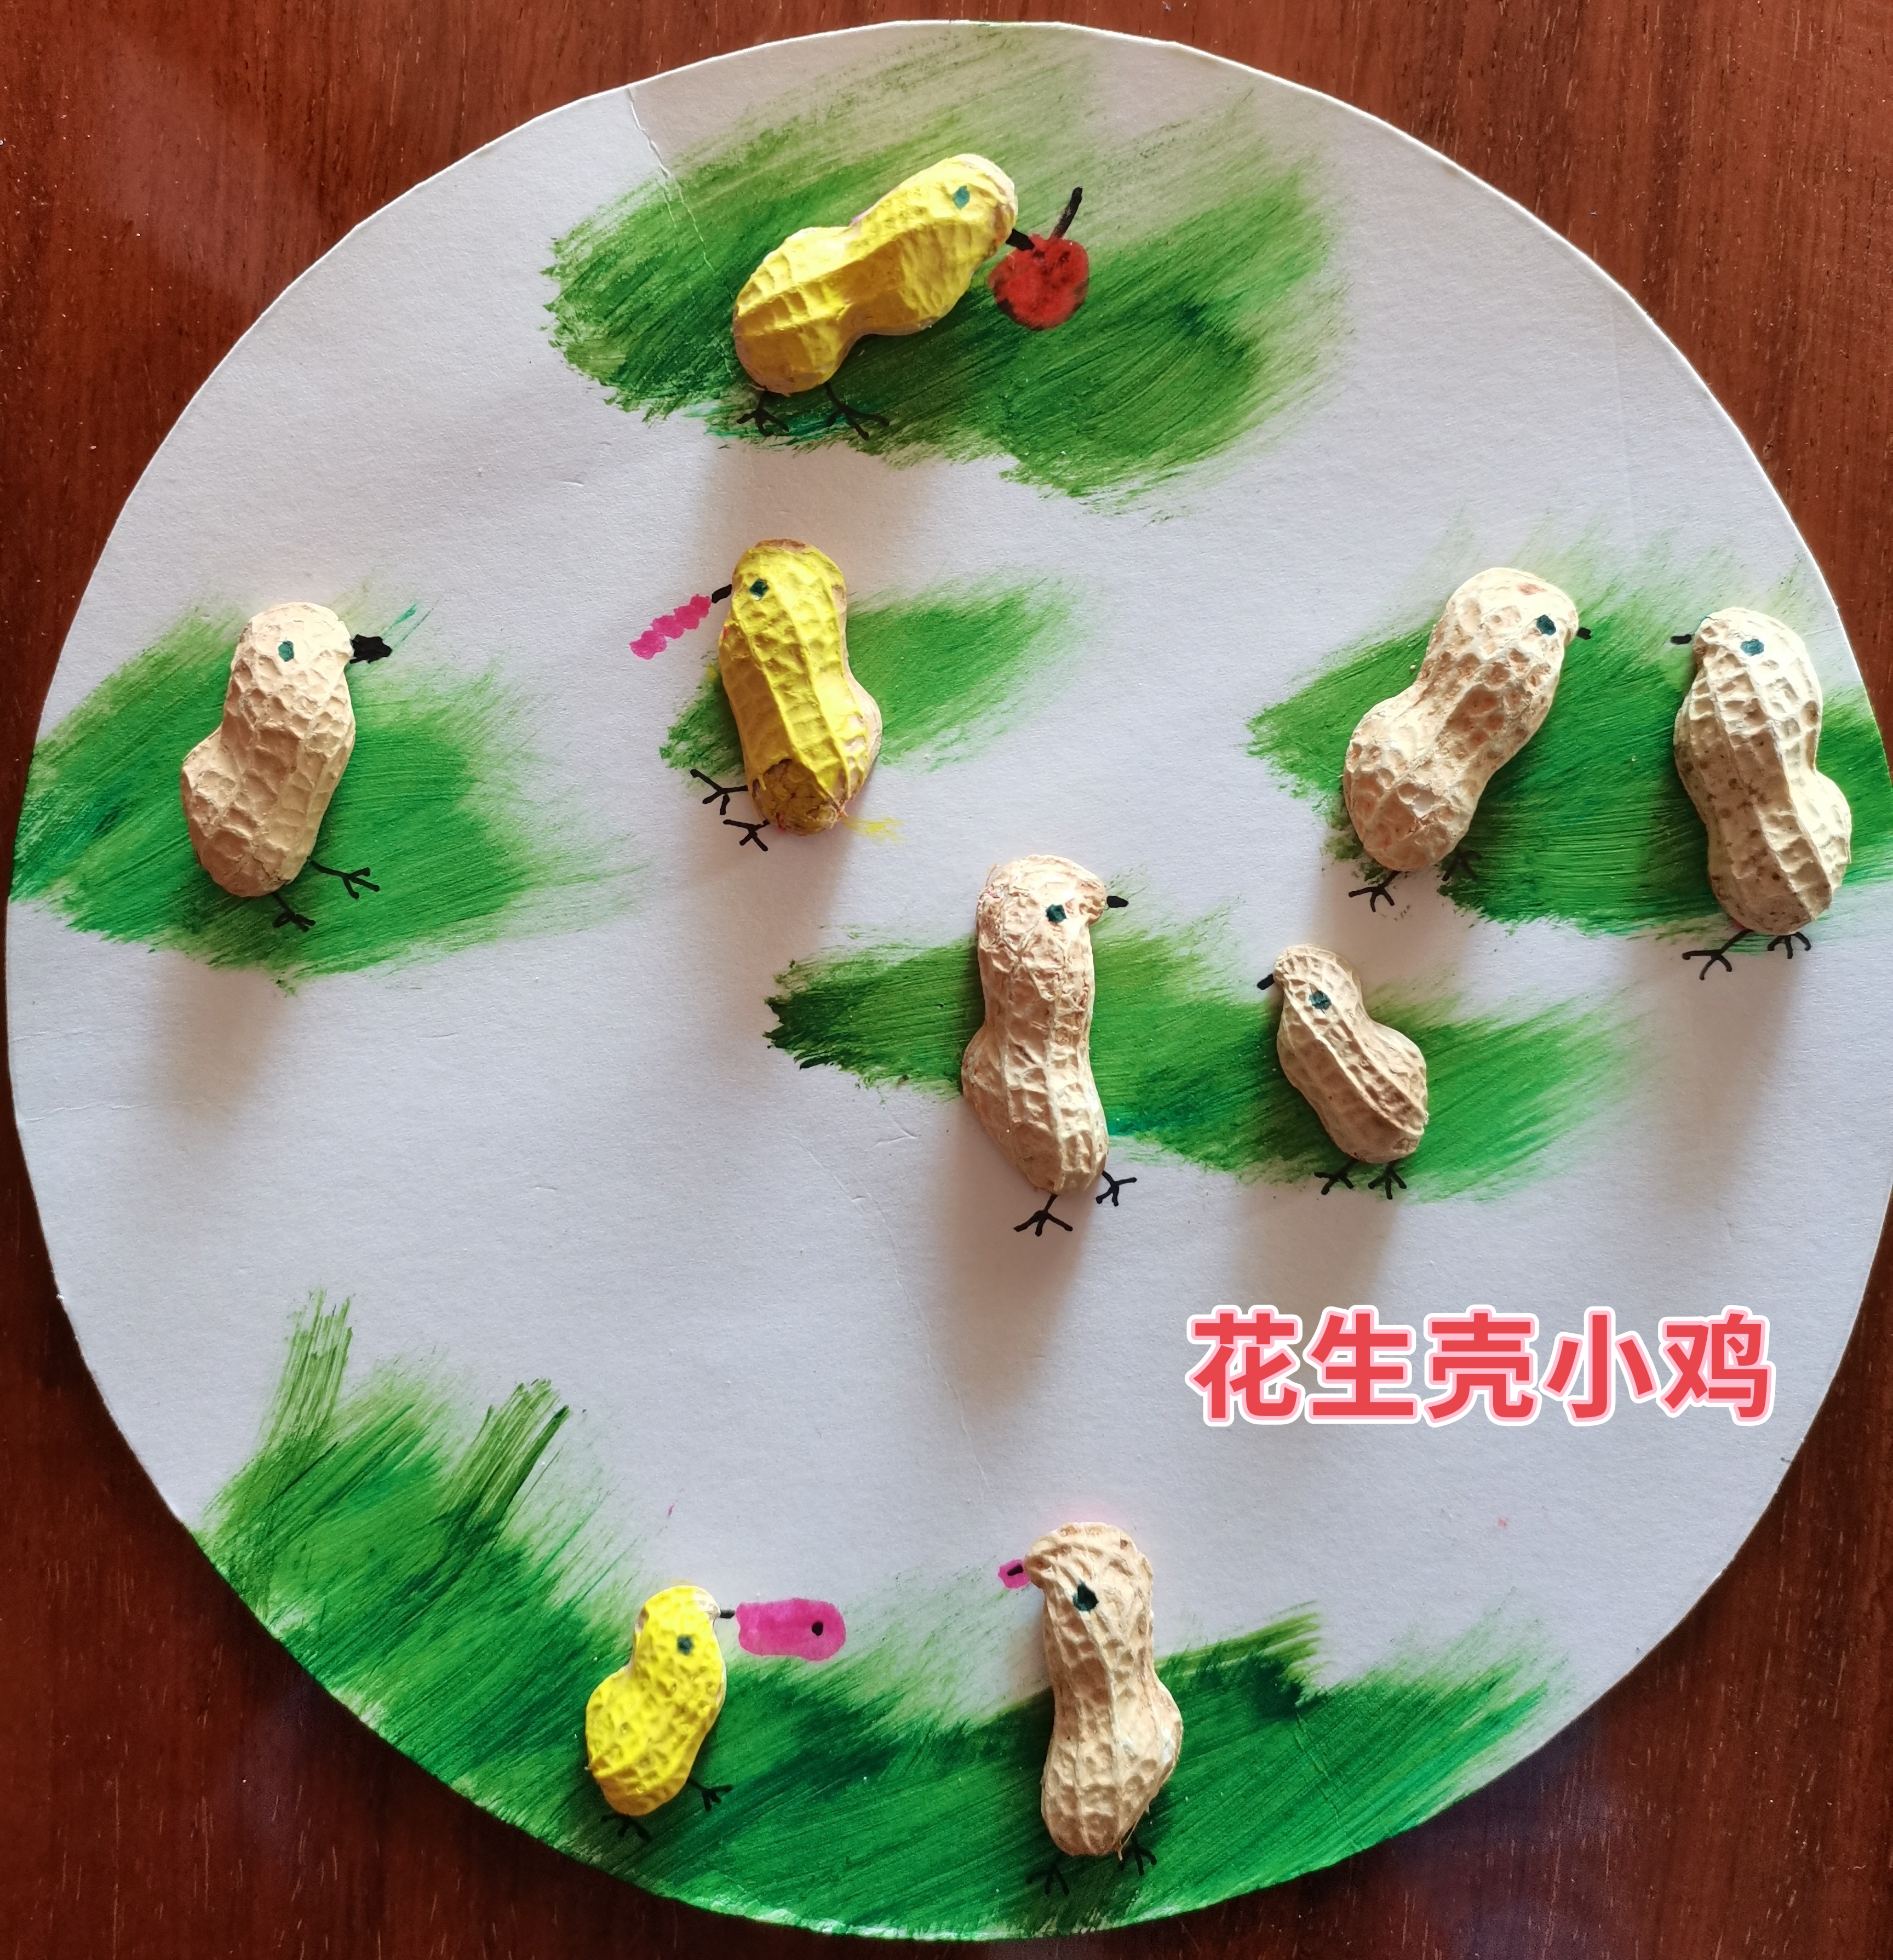 儿童创意画:花生壳小鸡